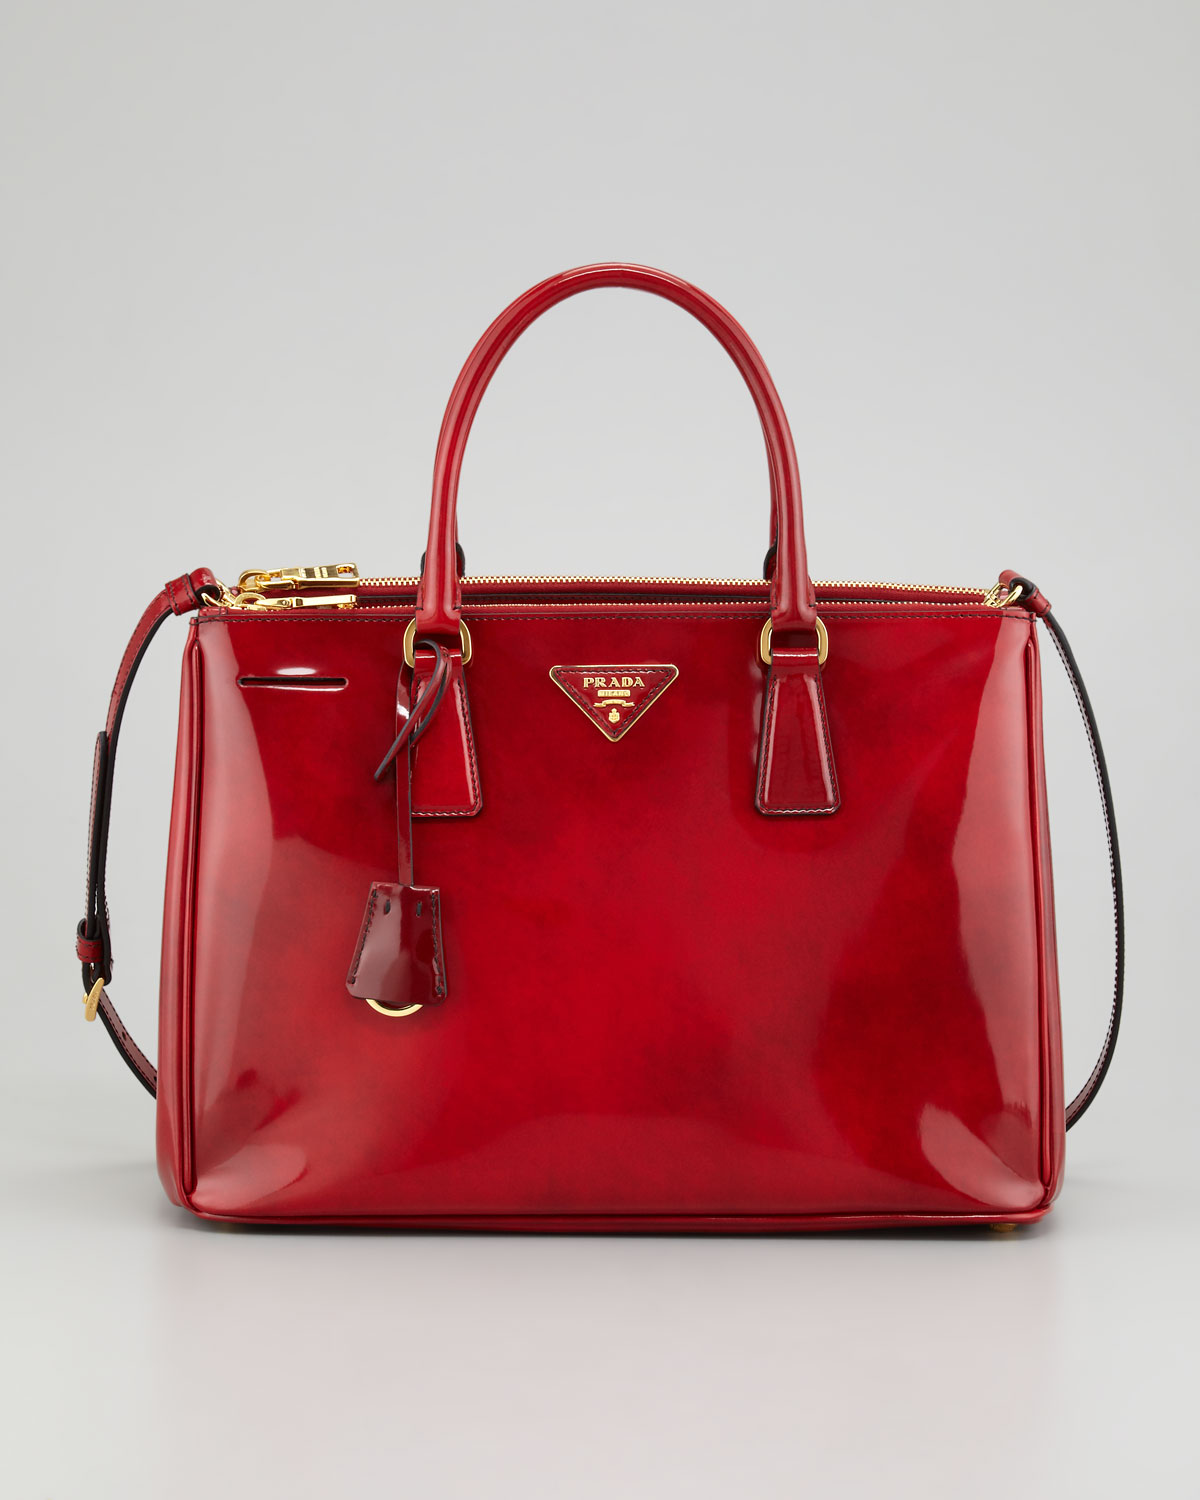 Prada Double Zip Tote Bag in Red - Lyst